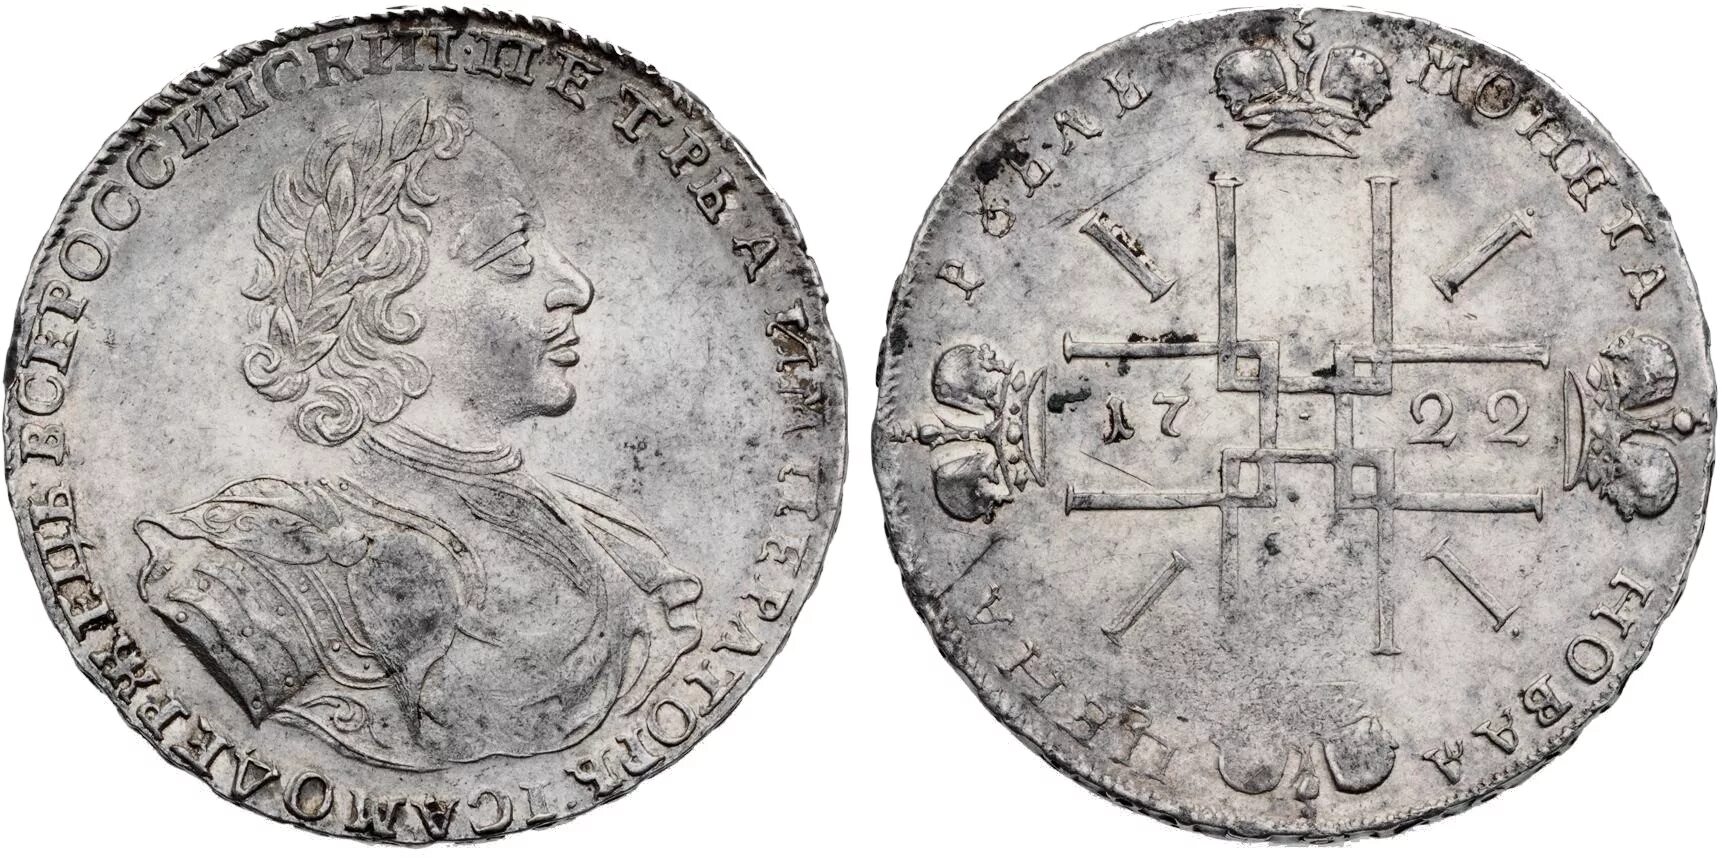 Царские монеты Петра 1. Монета рубль Петра 1. Монеты Российской империи Петра 1 рубль 1704.